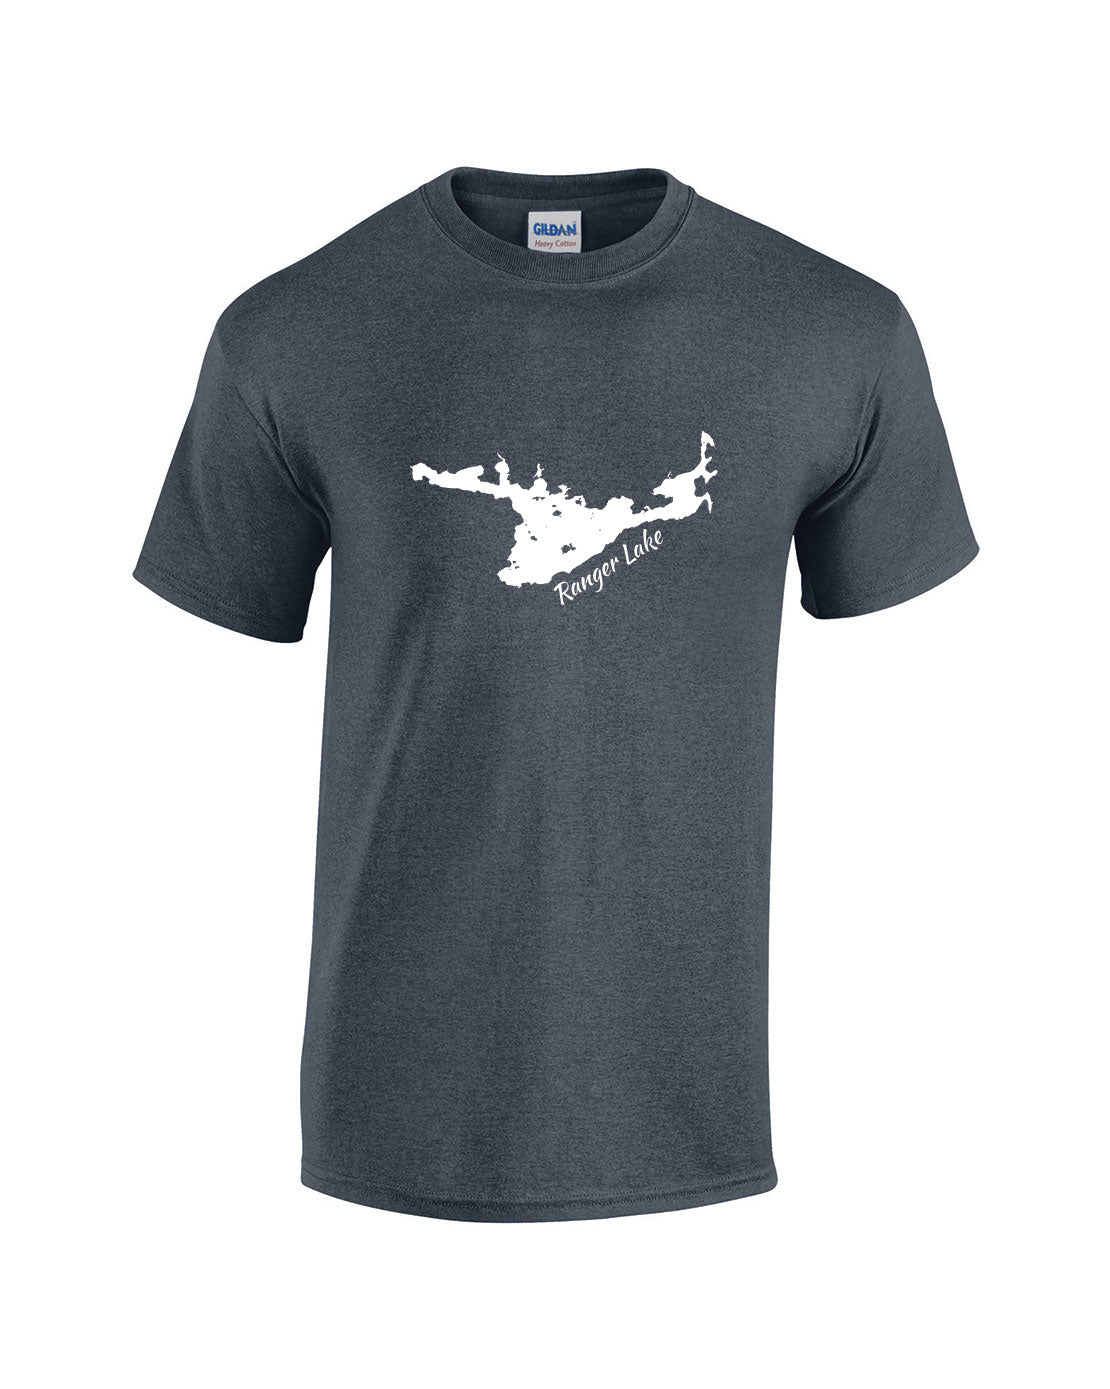 Ranger Lake T-Shirt